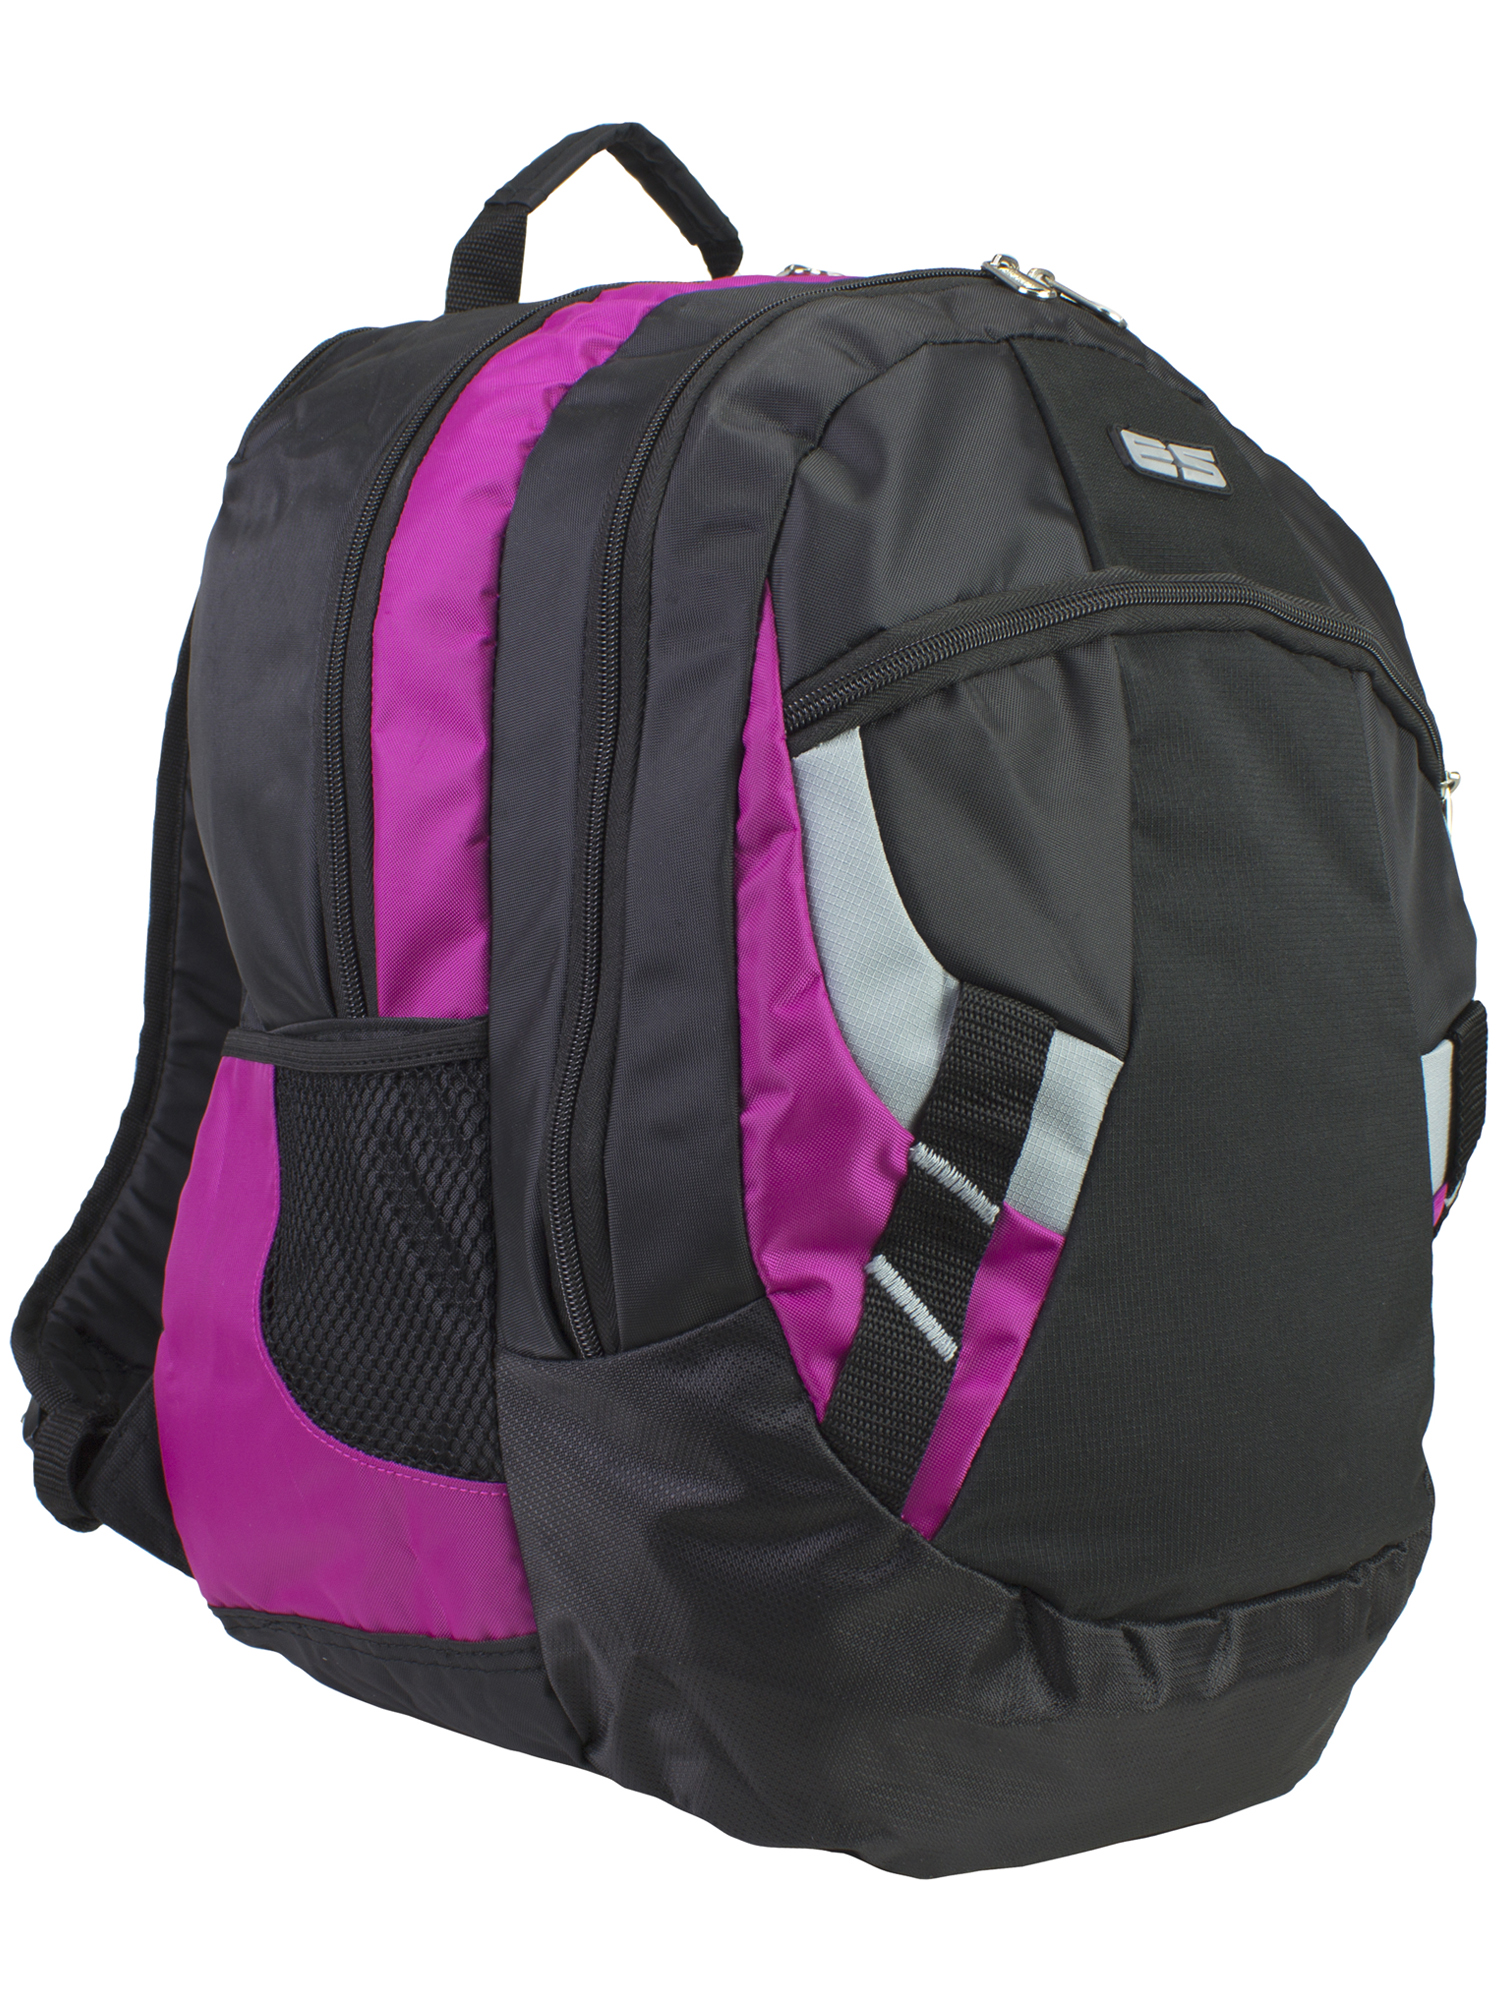 Eastsport Sport Laptop Backpack - image 1 of 6